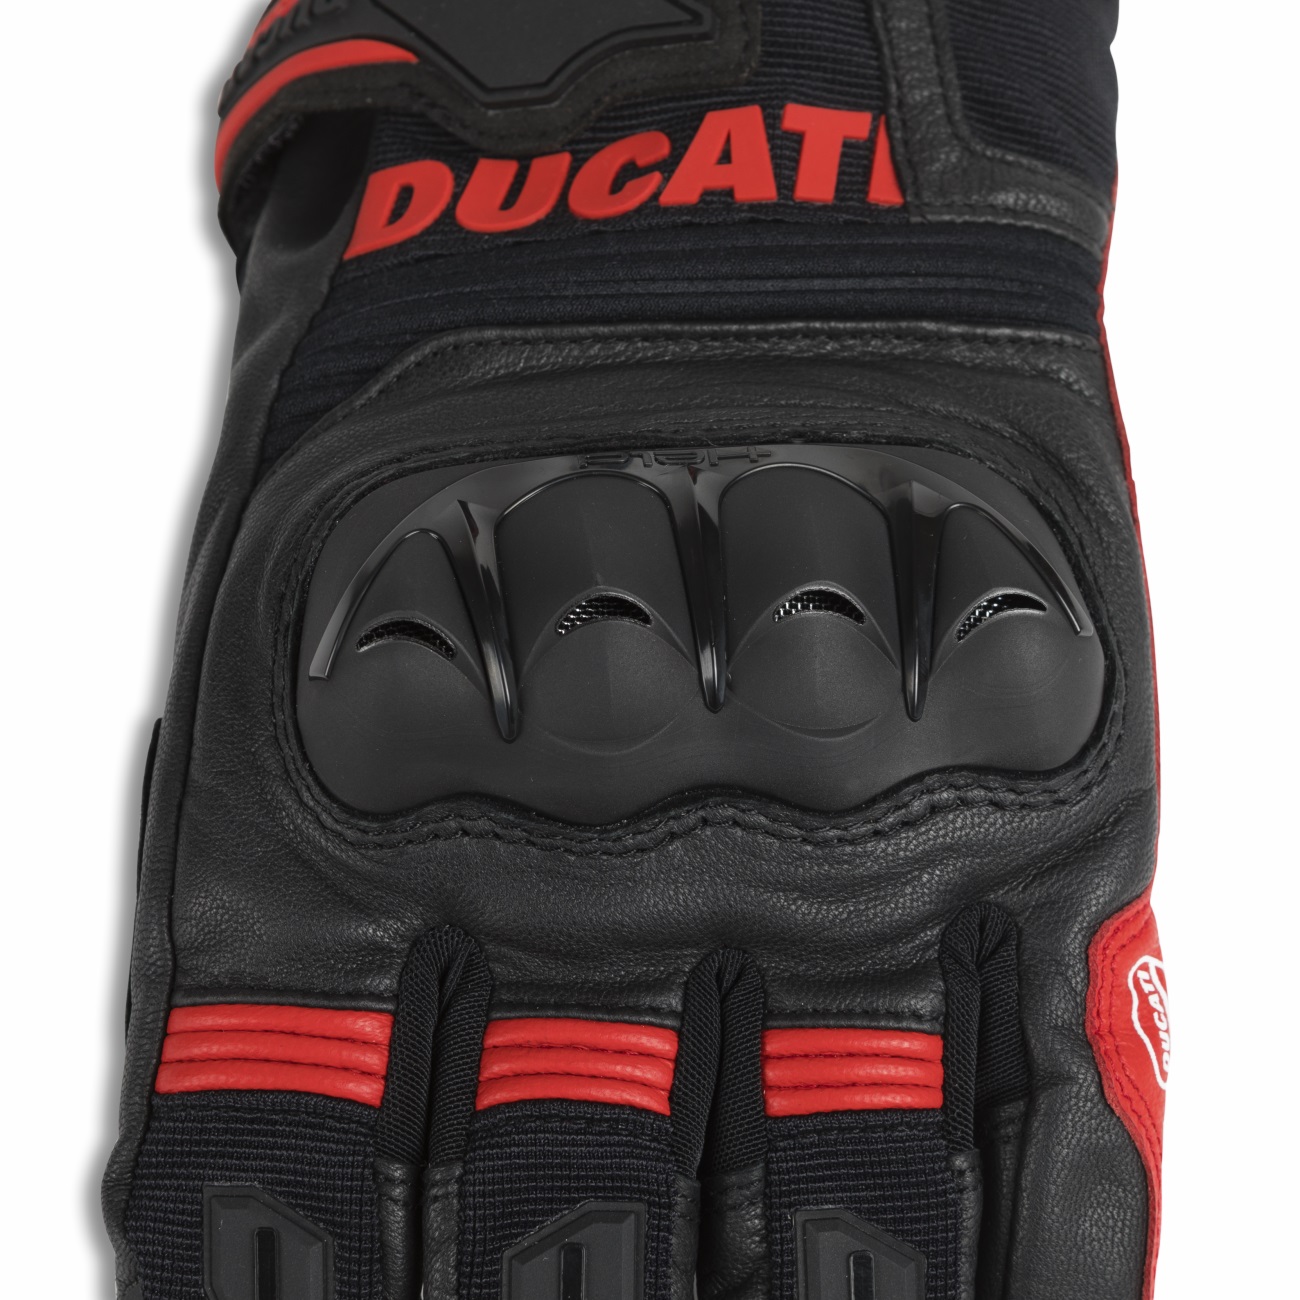 Ducati Tour C5